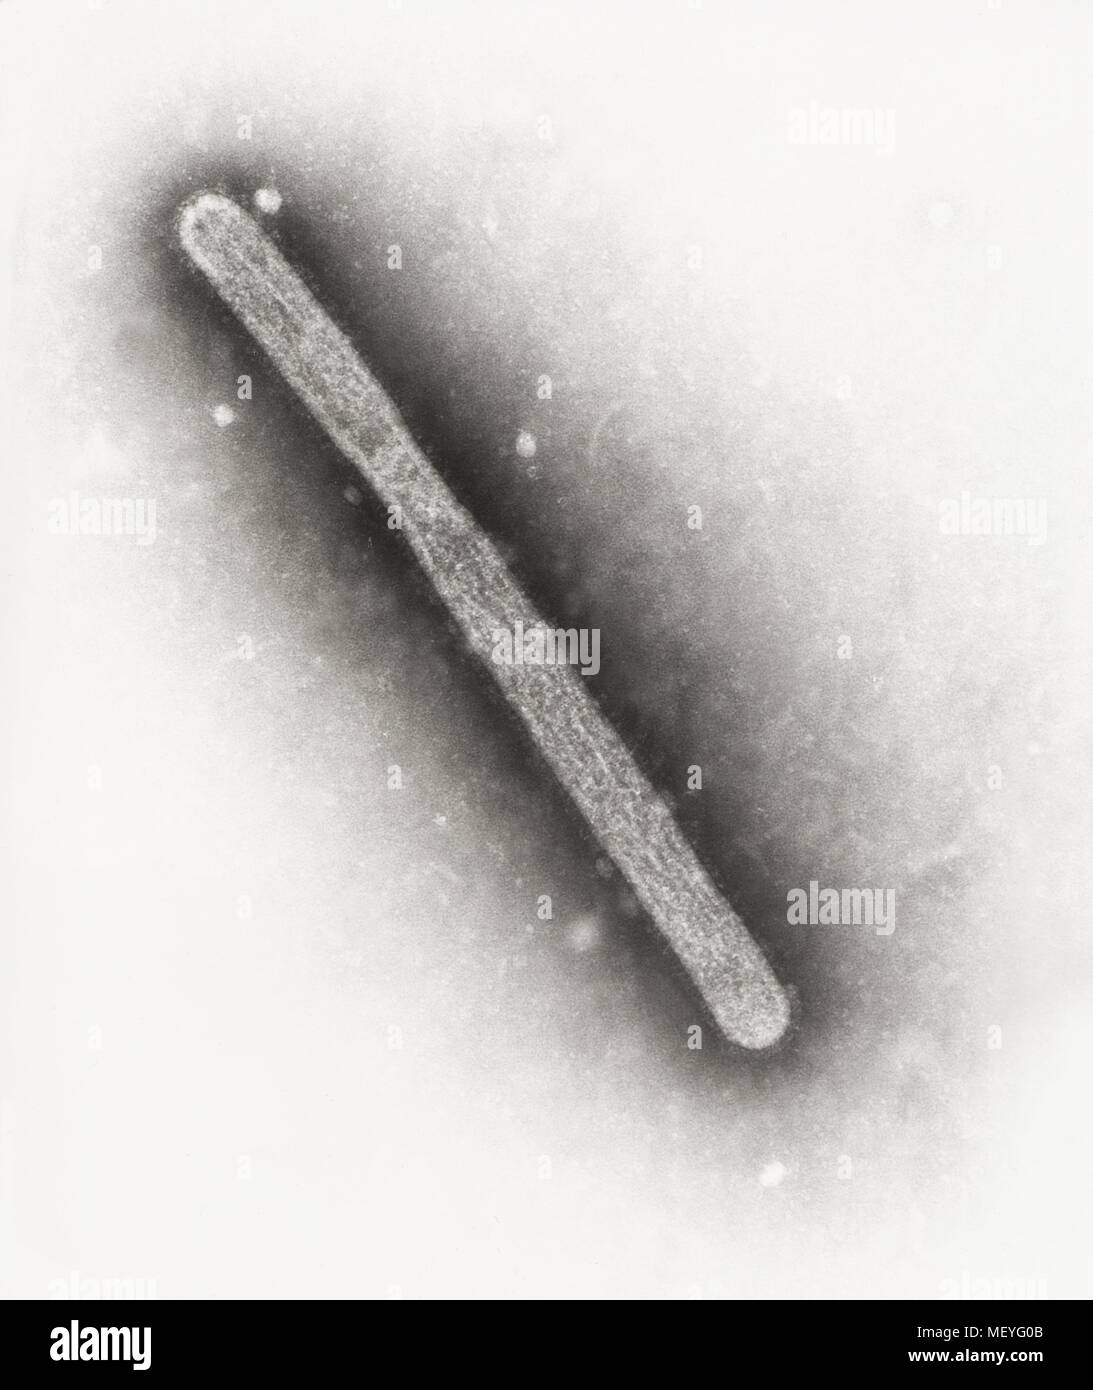 Virus A di influenza ha rivelato nel altamente scansione ingrandita al microscopio elettronico (SEM) immagine, 2005. Immagine cortesia di centri per il controllo delle malattie (CDC) / Cynthia Goldsmith, Jackie Katz. () Foto Stock